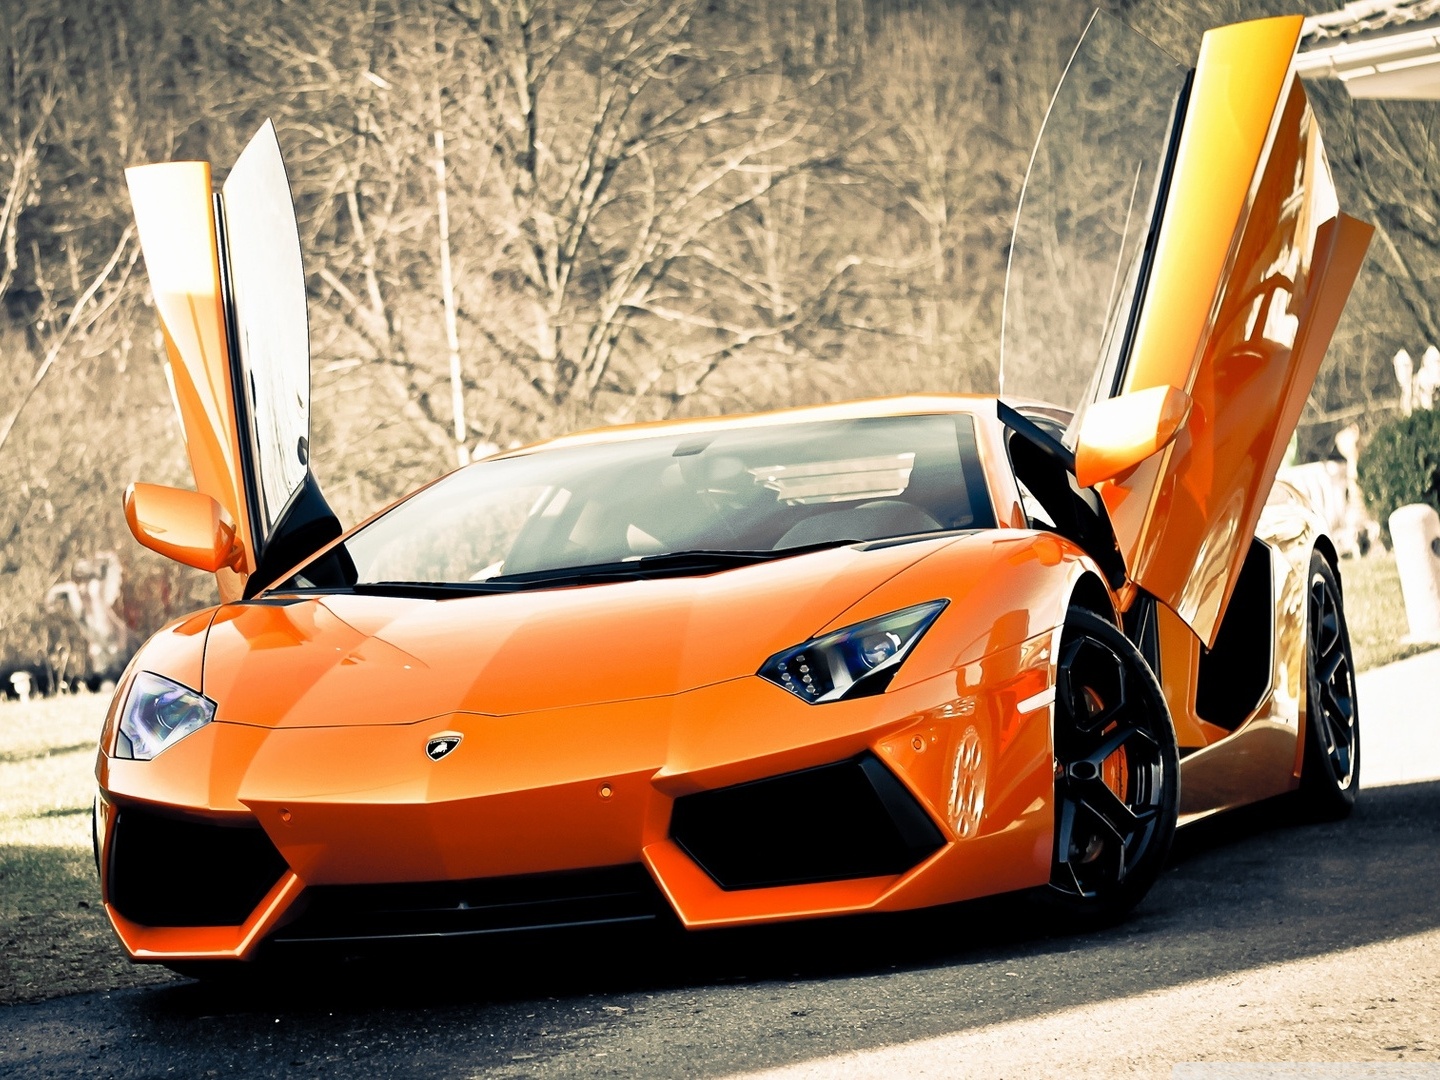 Download 21 4k-car-wallpaper 4K-Lamborghini-Aventador-Lamborghini-Sports-Car-Wallpaper-.jpg